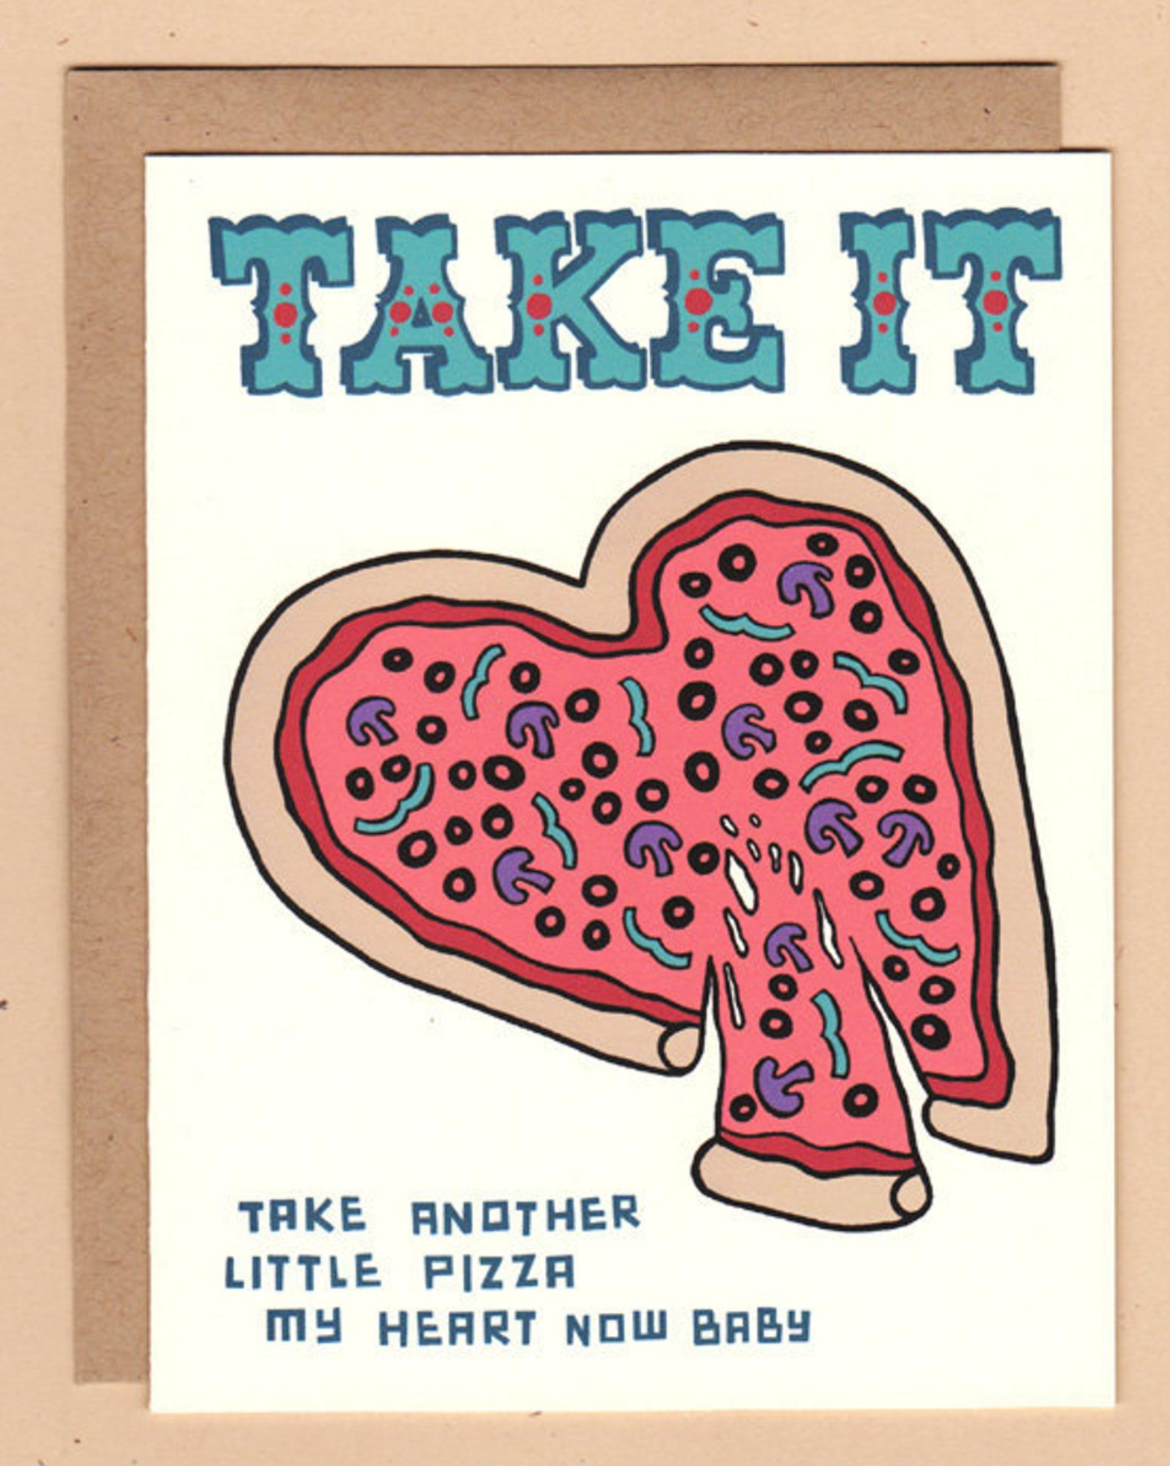 Card - Take It Pizza